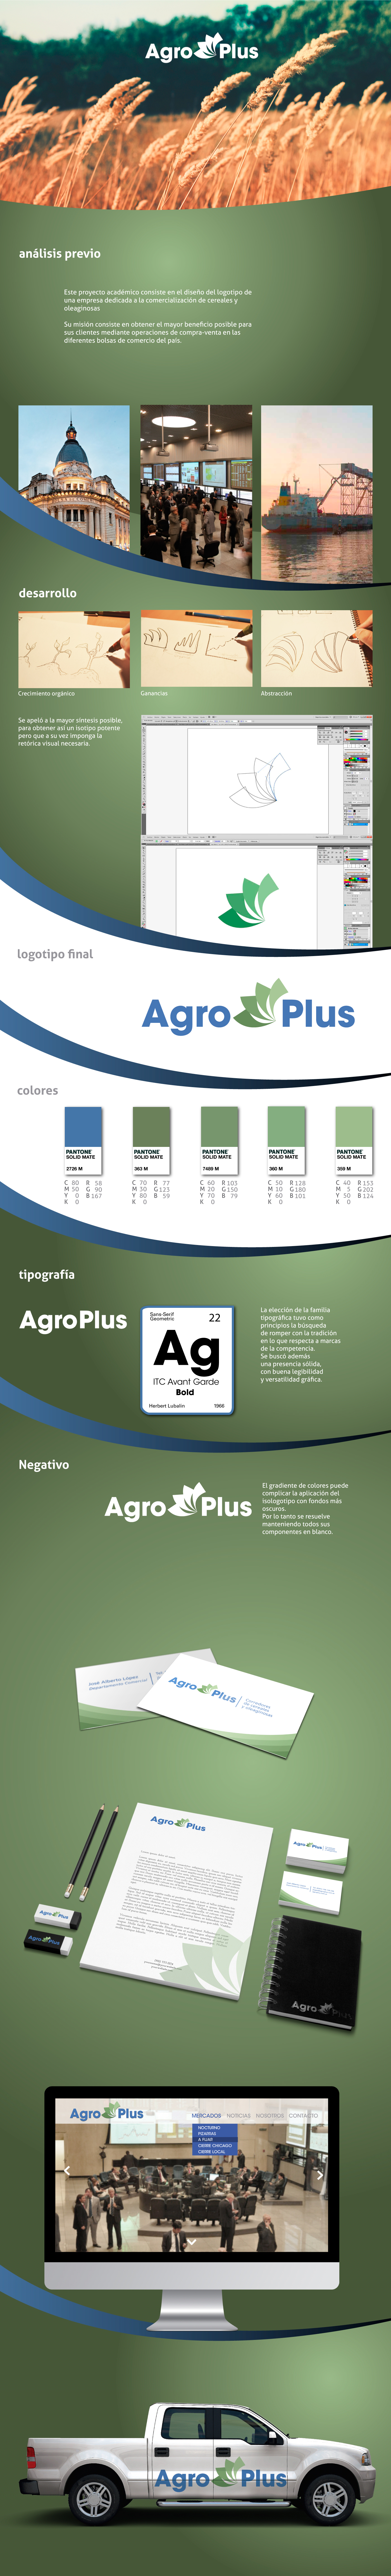 marca Agro trading agrobrokers brand logo agropecuária soja soybean